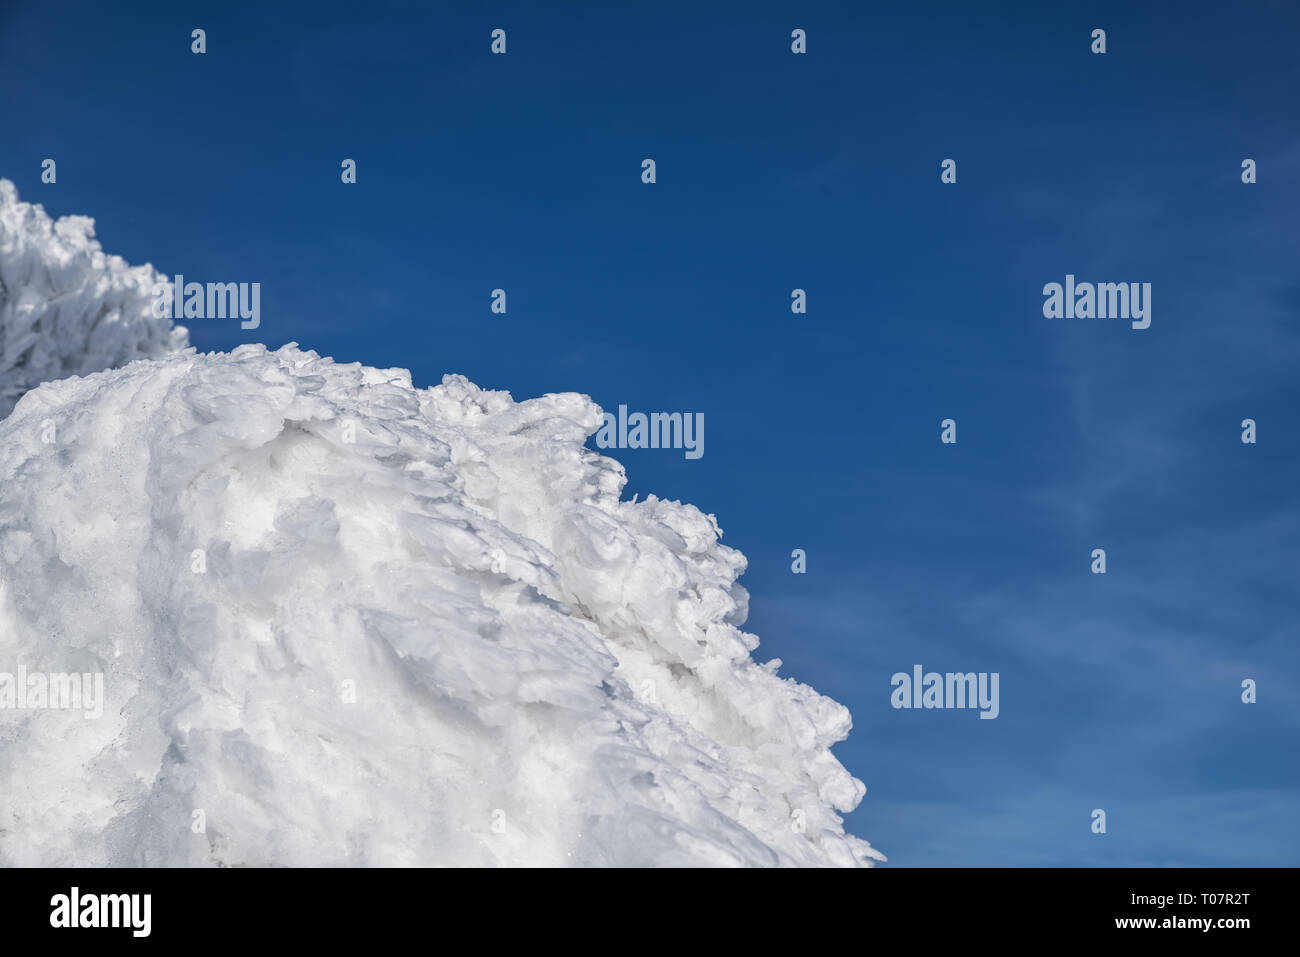 Schnee oder Schnee auf dem Gipfel. Blauen Himmel im Hintergrund. Stockfoto